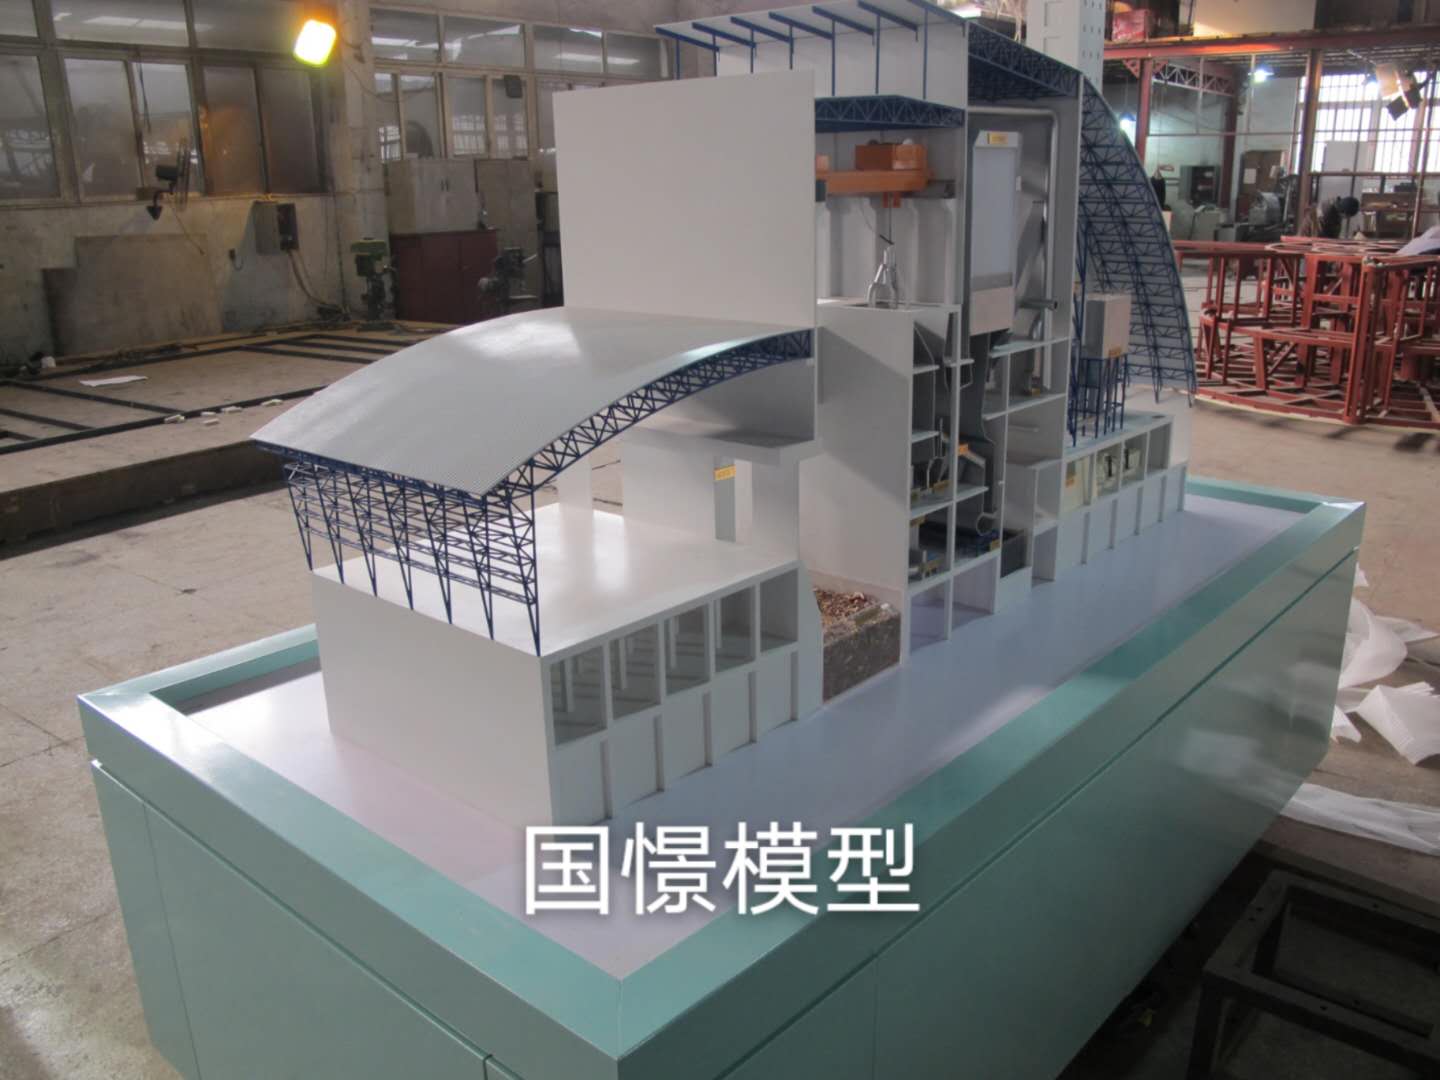 汝城县工业模型